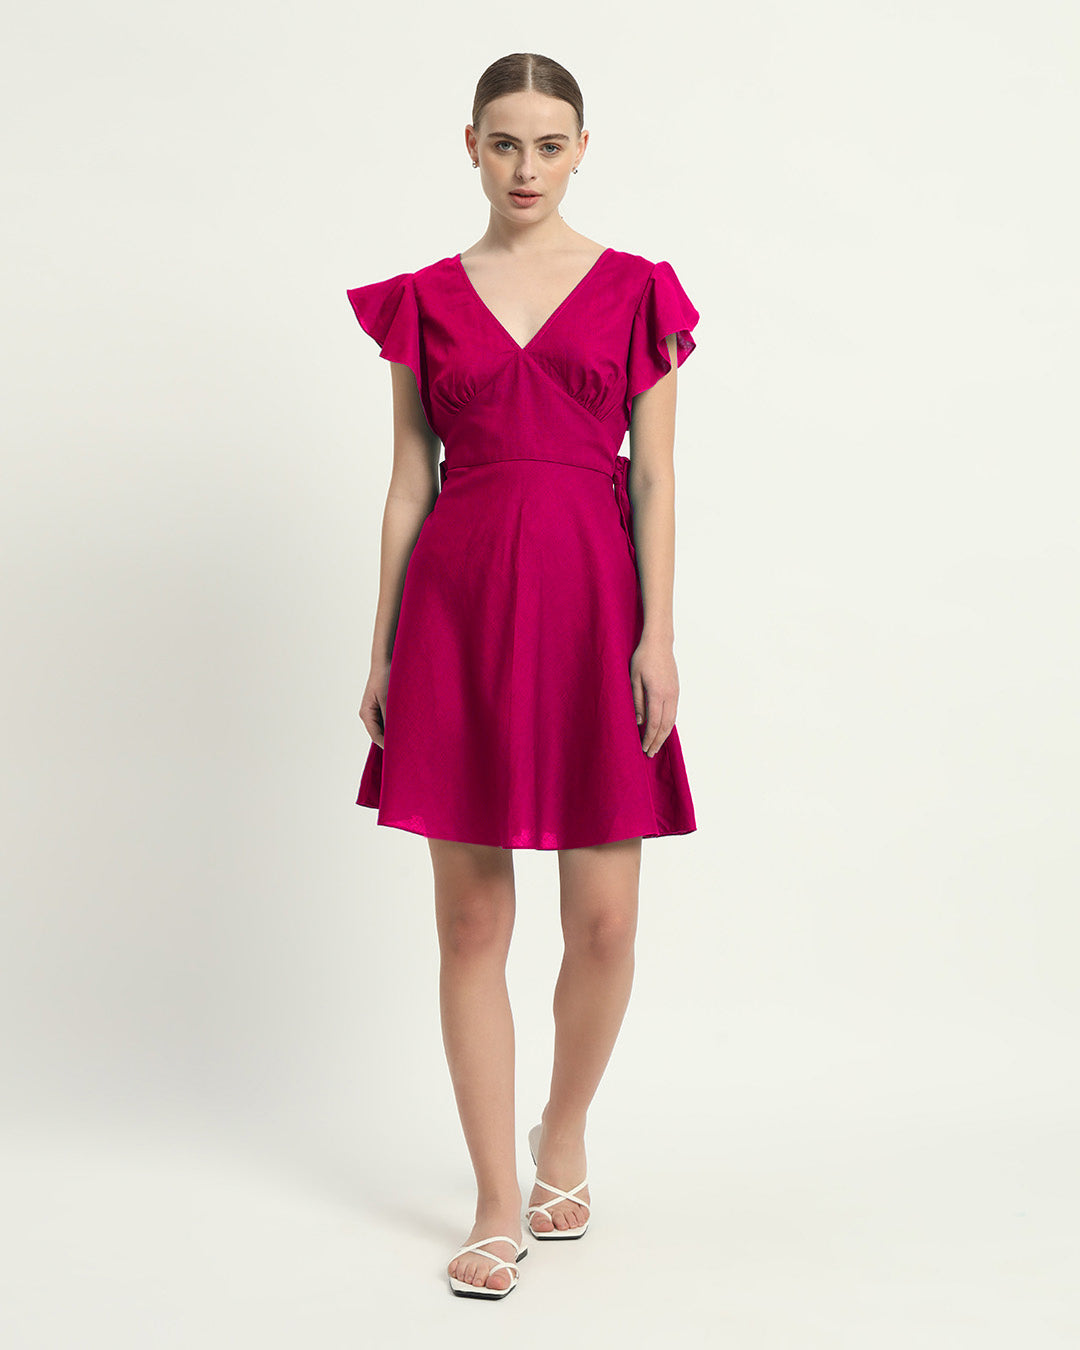 The Berry Fairlie Cotton Dress